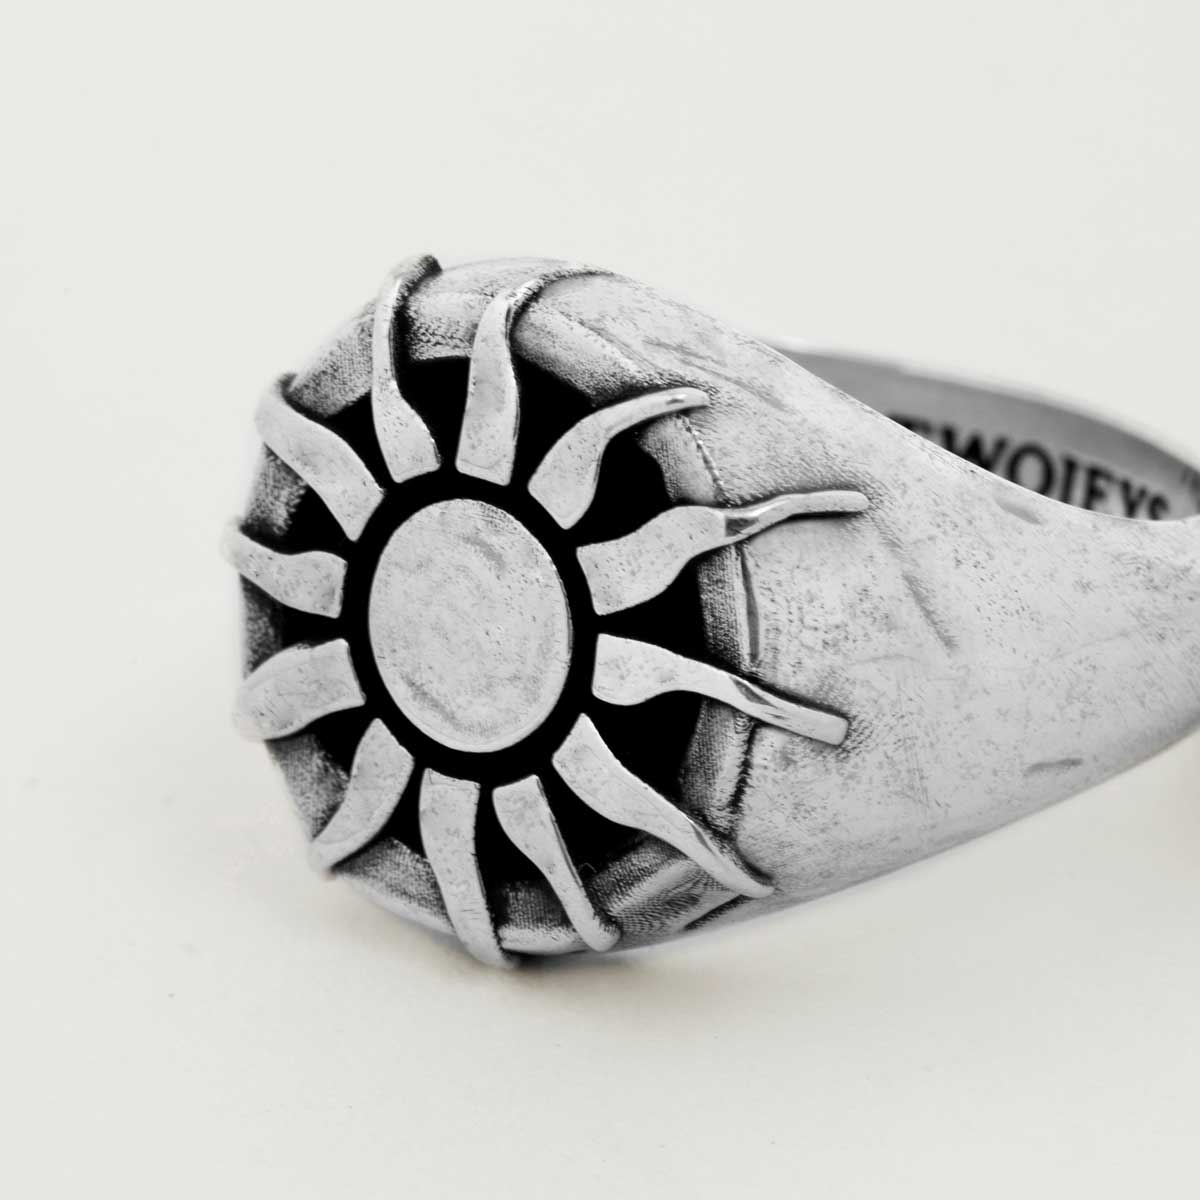 Twojeys rings Organic Sun Ring